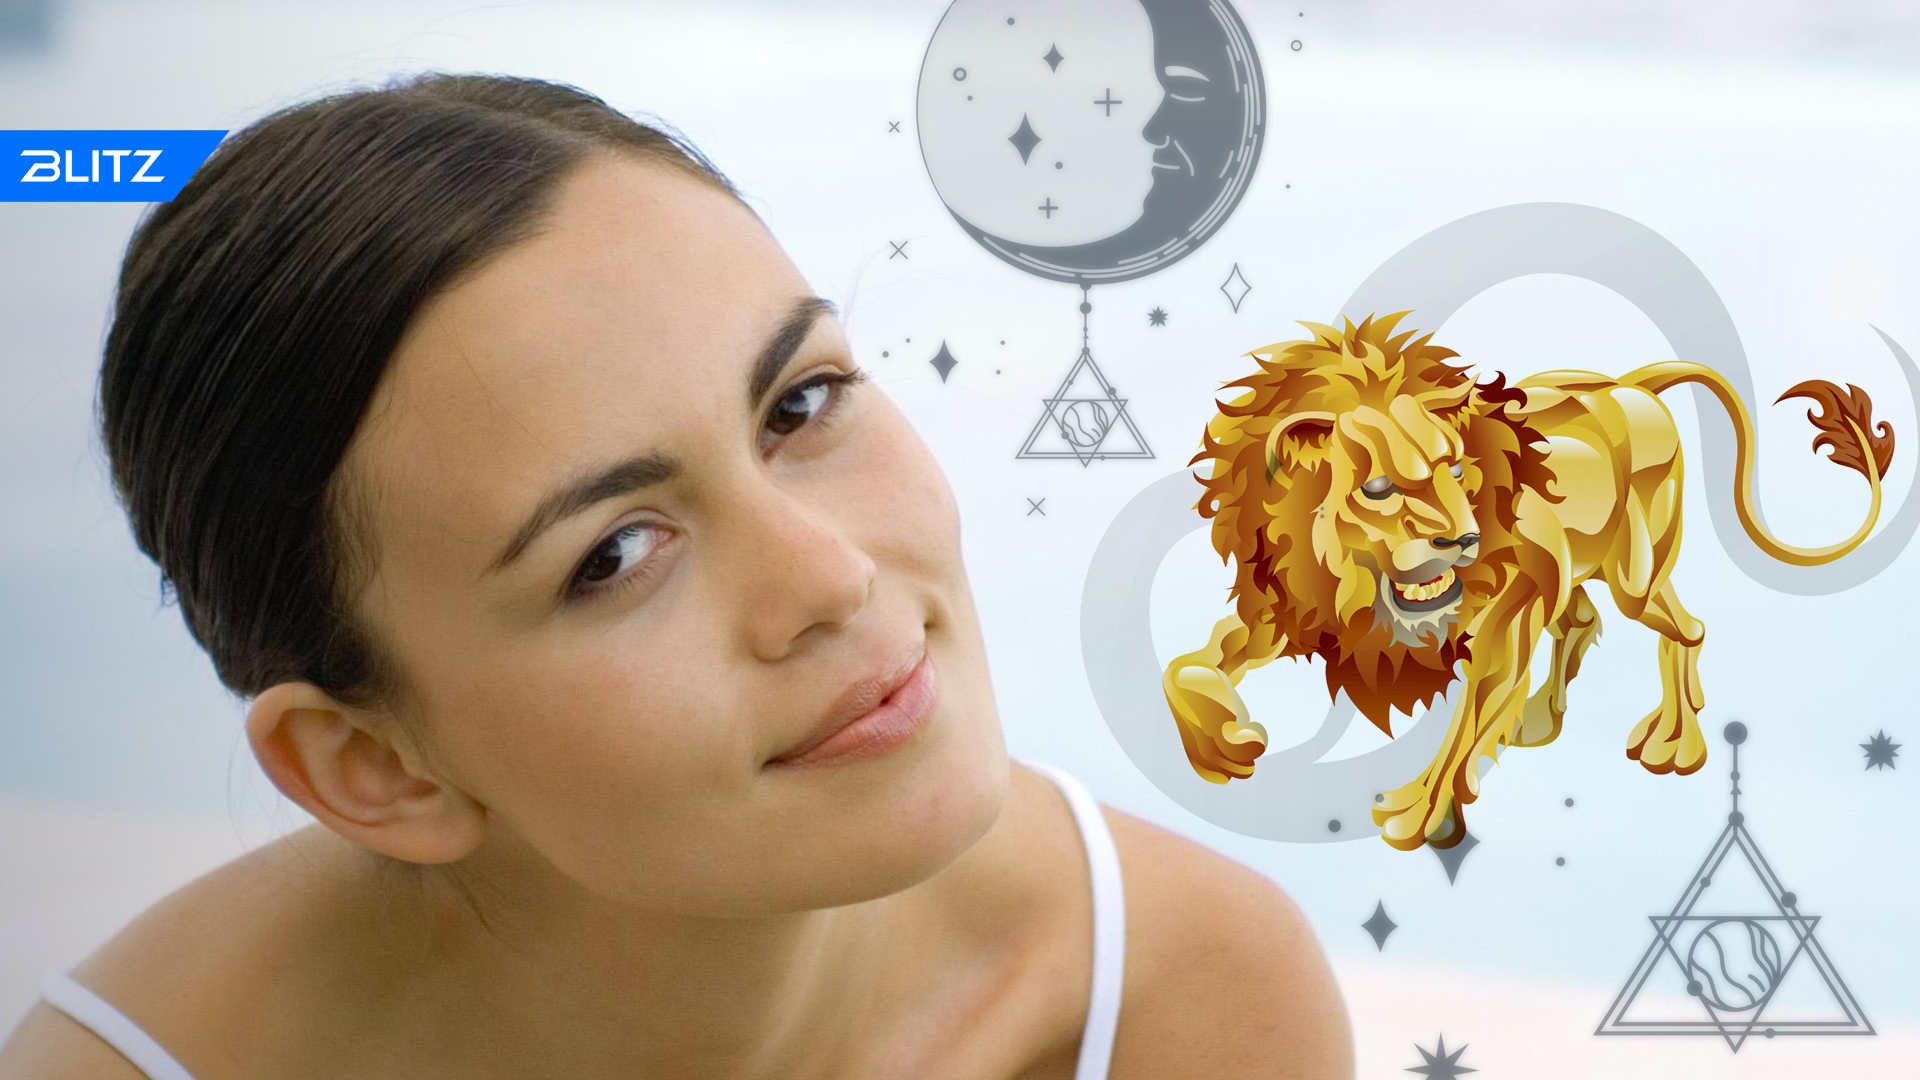 Гороскоп на сегодня женщина лев самый точный. Причёска Льва для актрисы. Гороскоп "Лев". Лев Деньгов. Телеканал Лева актрисы.